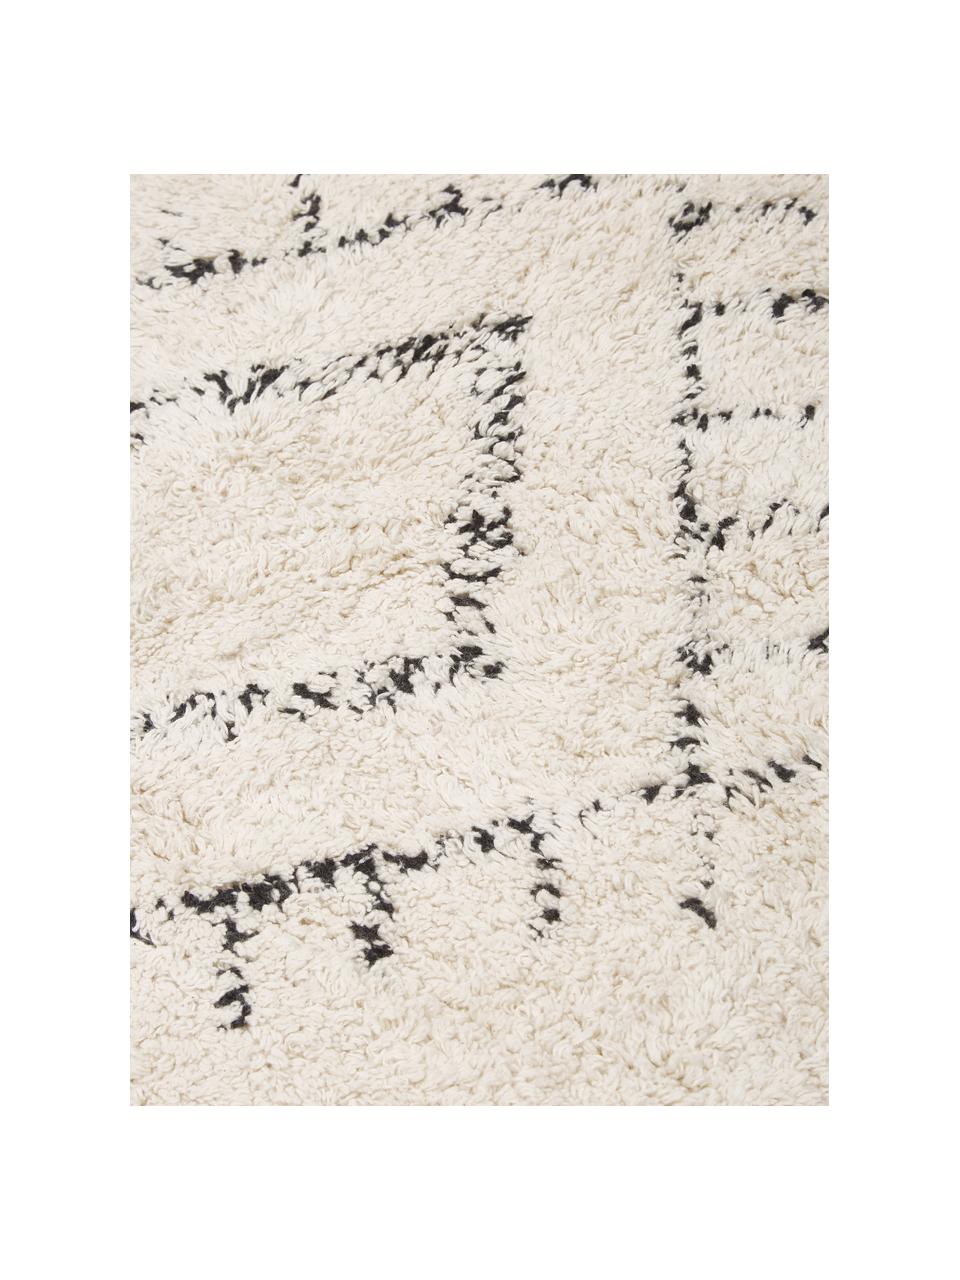 Ručně tkaný kulatý bavlněný koberec s třásněmi Fionn, Světle béžová, černá, Ø 150 cm (velikost M)